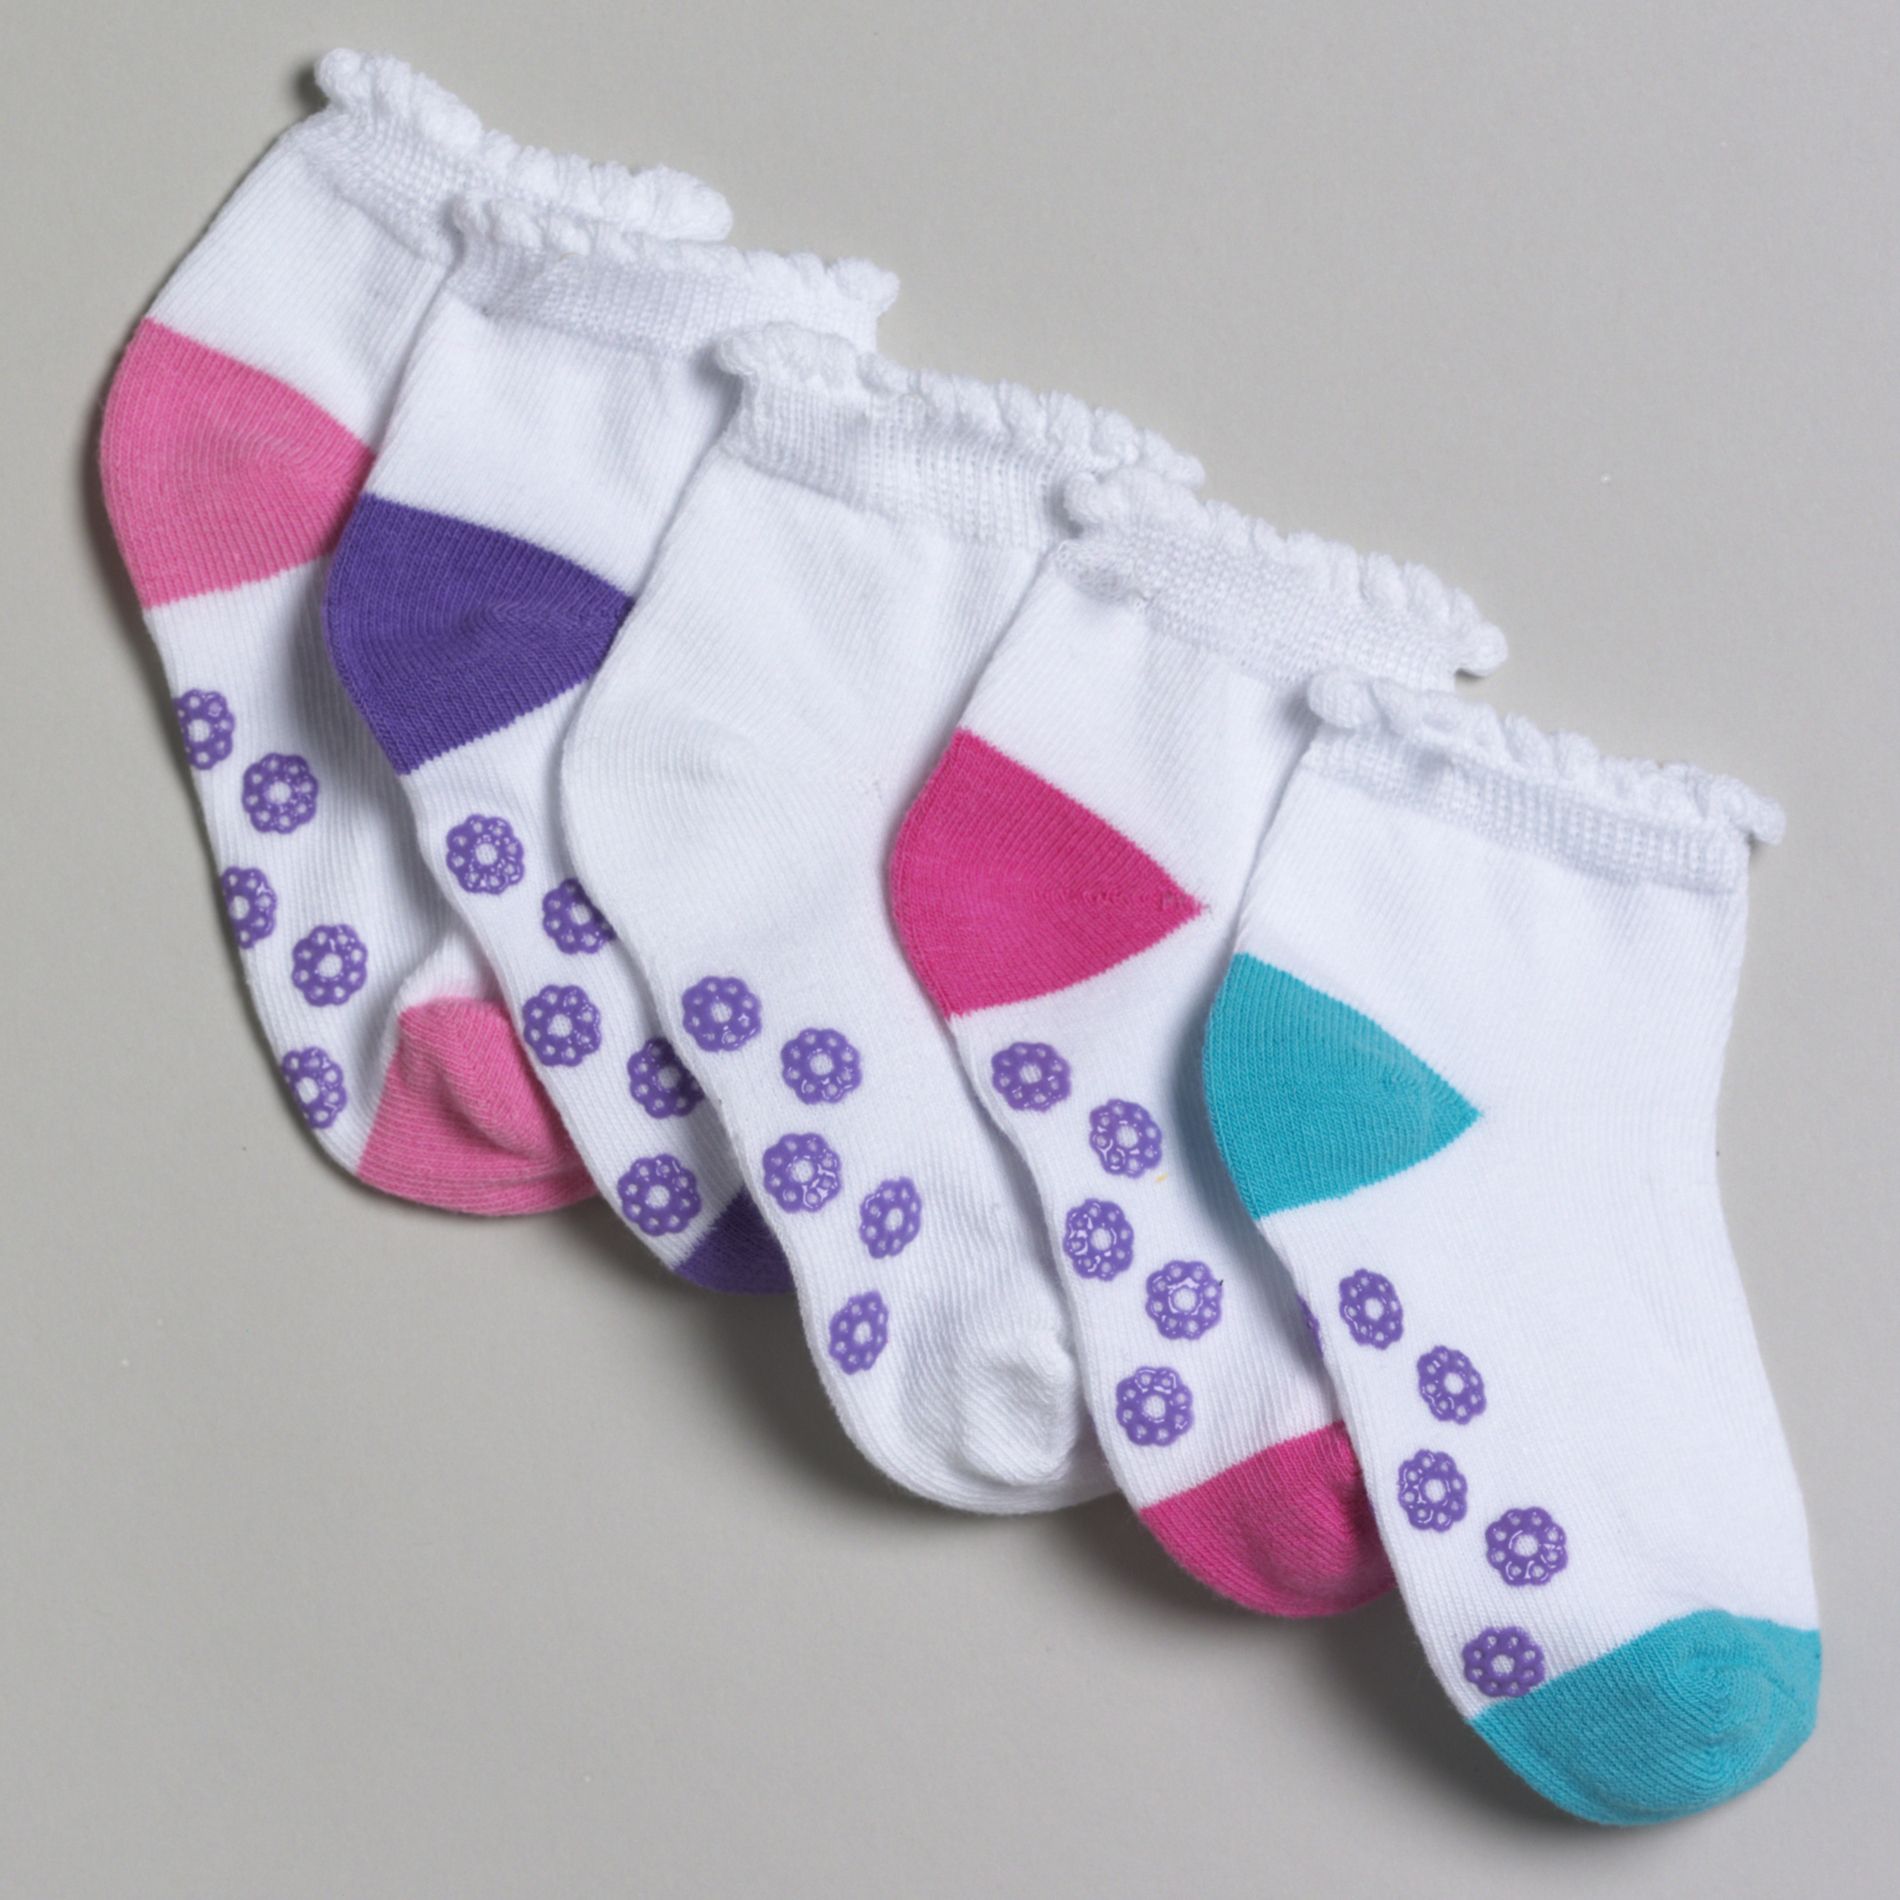 Joe Boxer Toddler Girl's 6 Pair Low Cut Socks